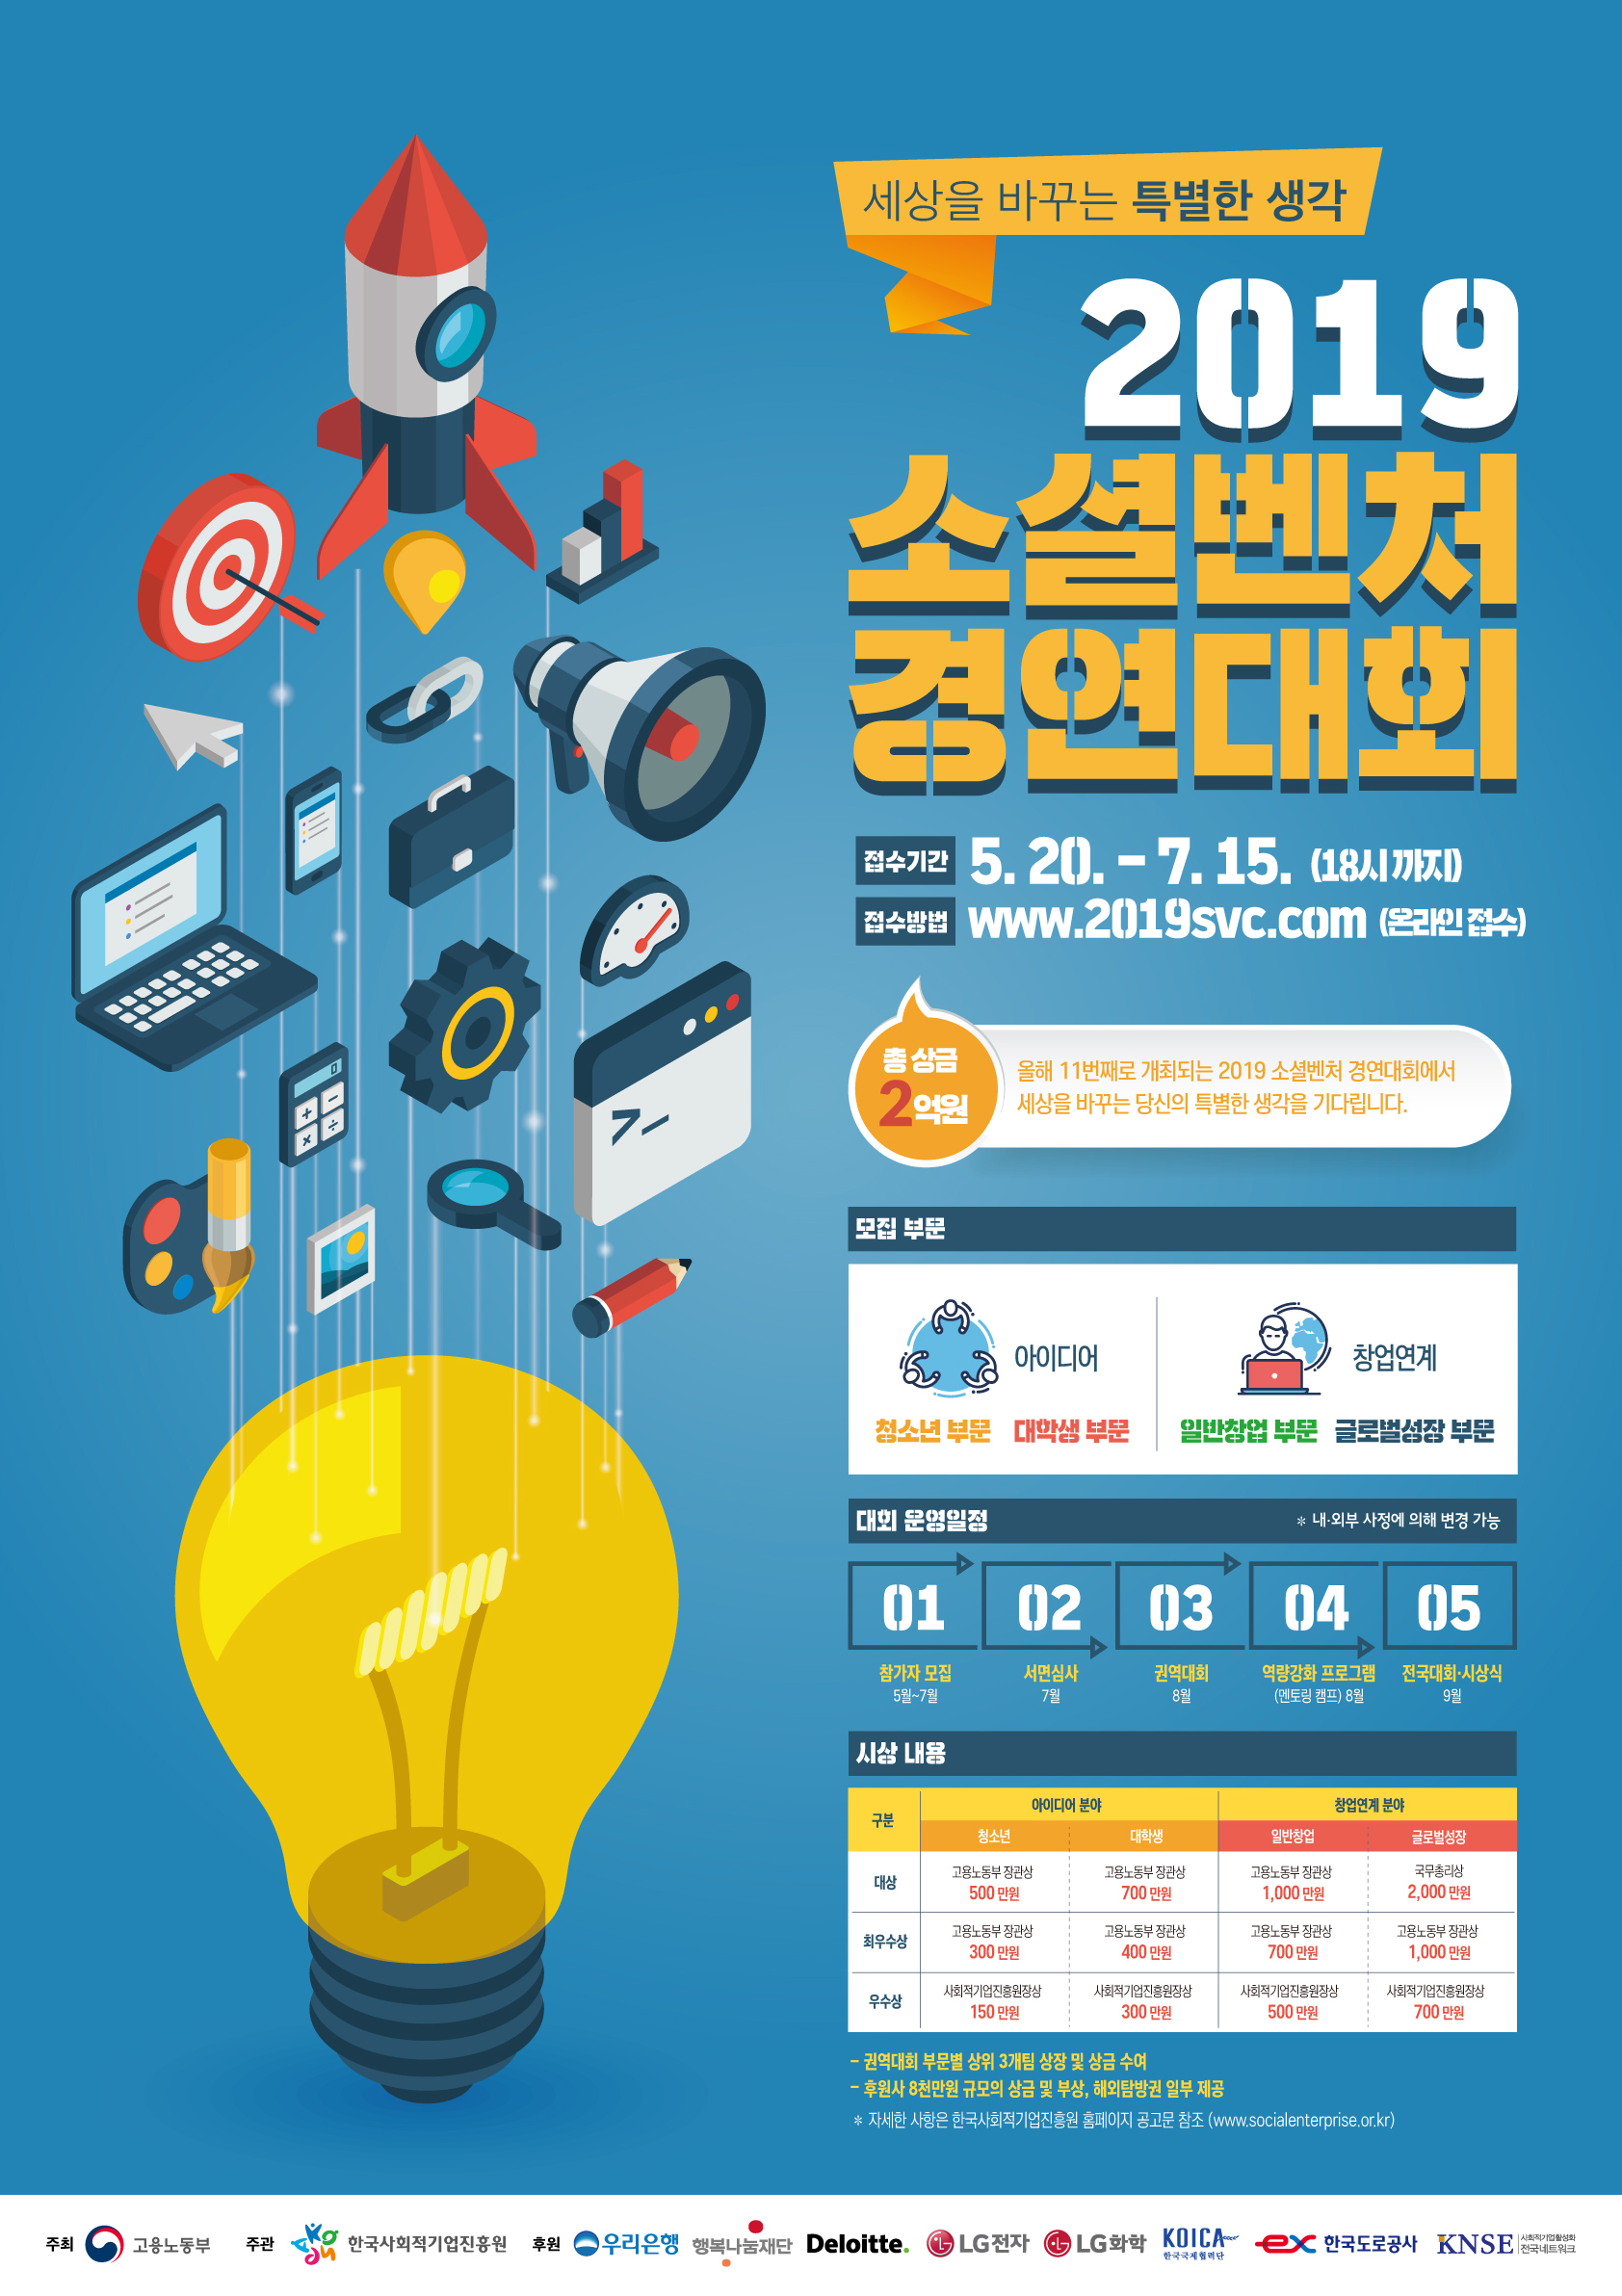 2019년 소셜벤처 경연대회 안내 첨부#1